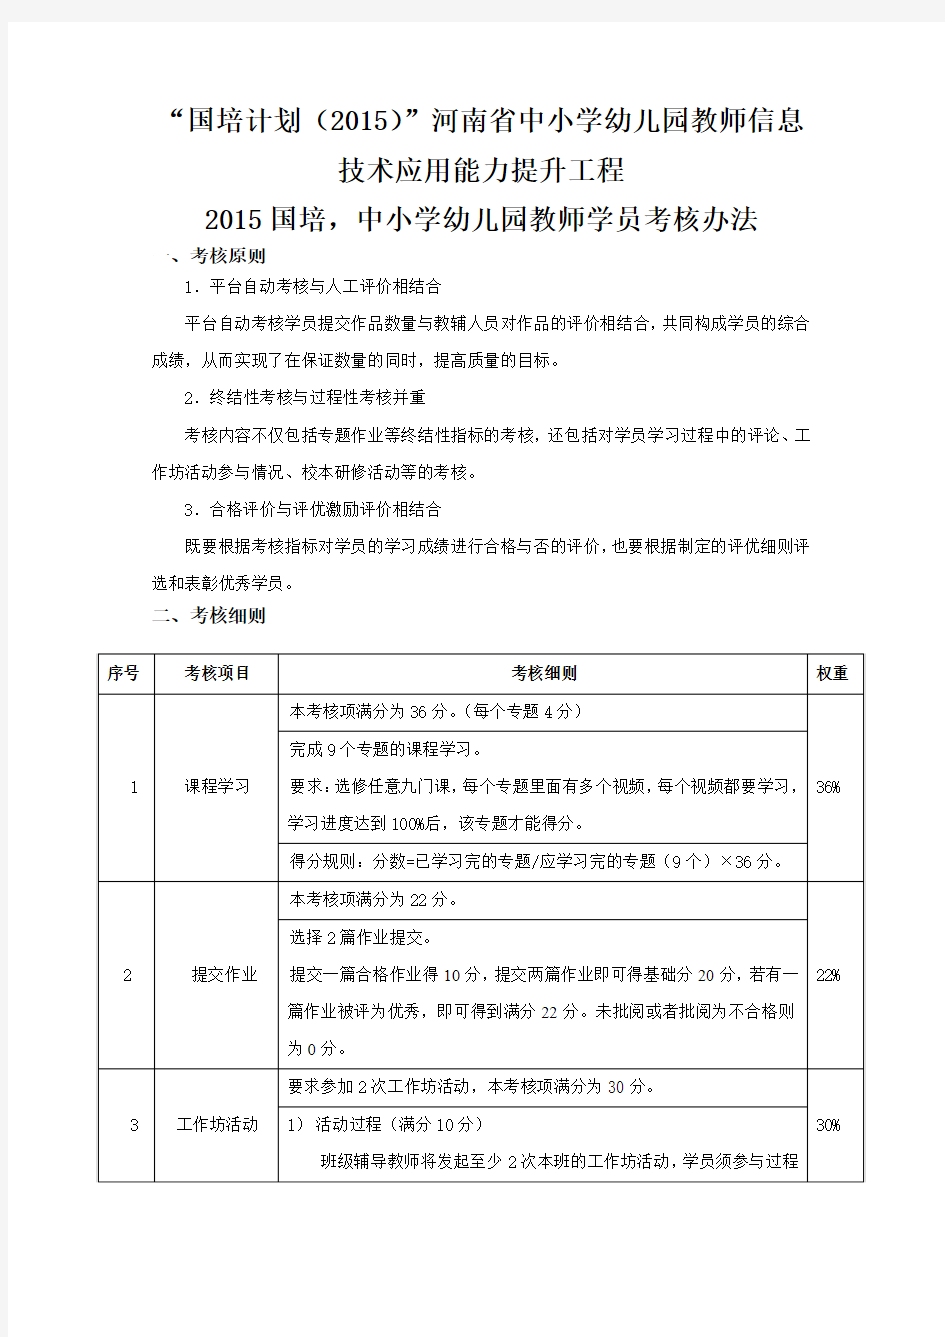 2015国培,中小学幼儿园教师学员考核办法